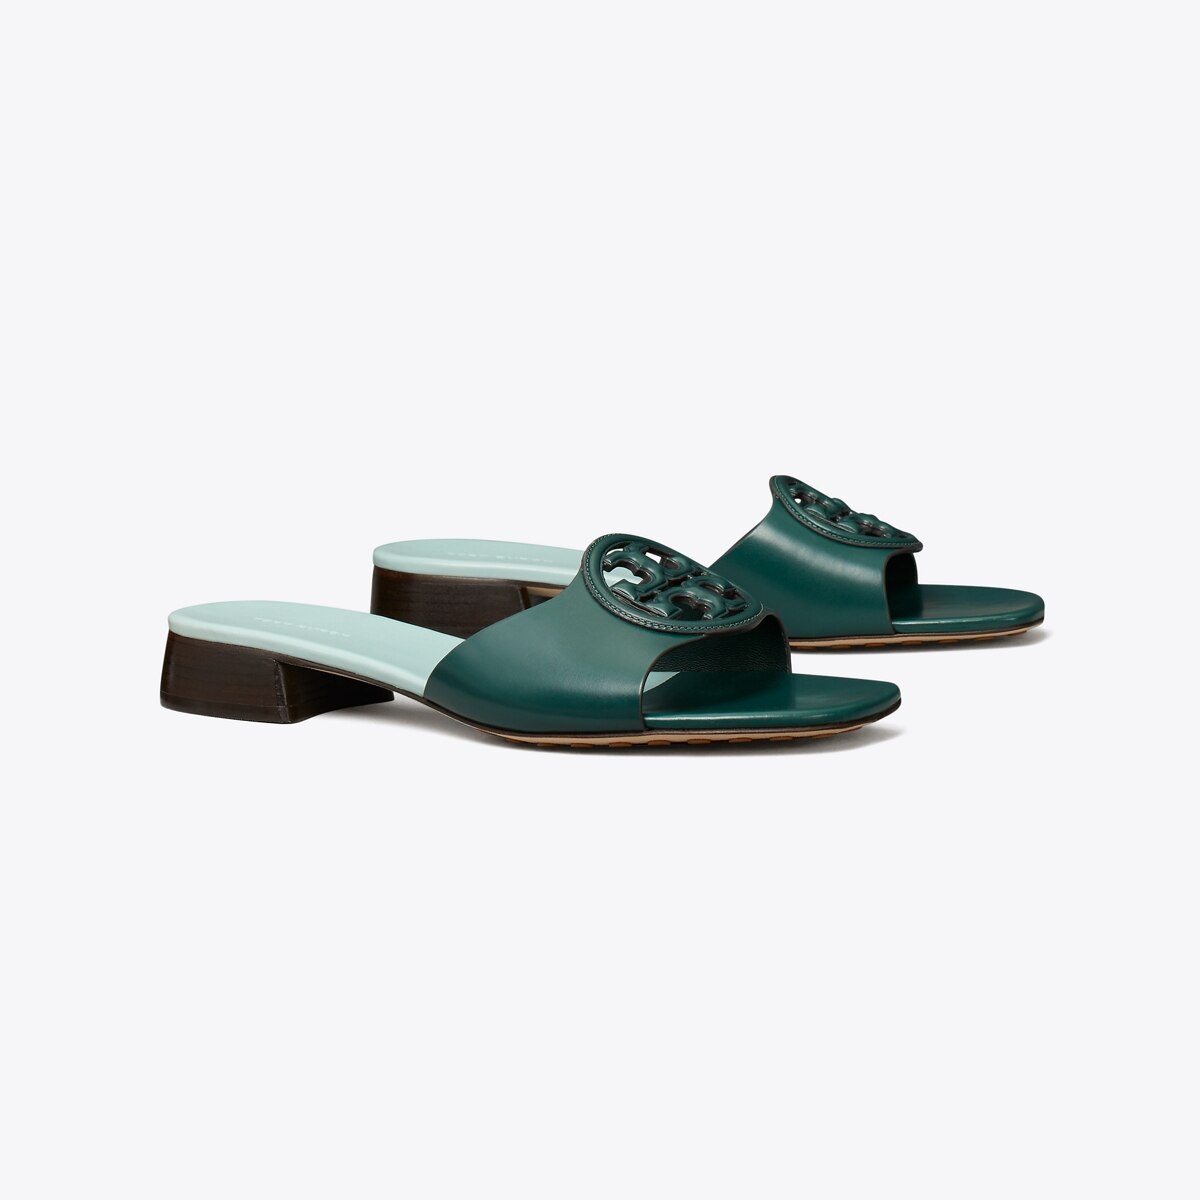 Bombé Miller Slide: Women's Designer Sandals | Tory Burch